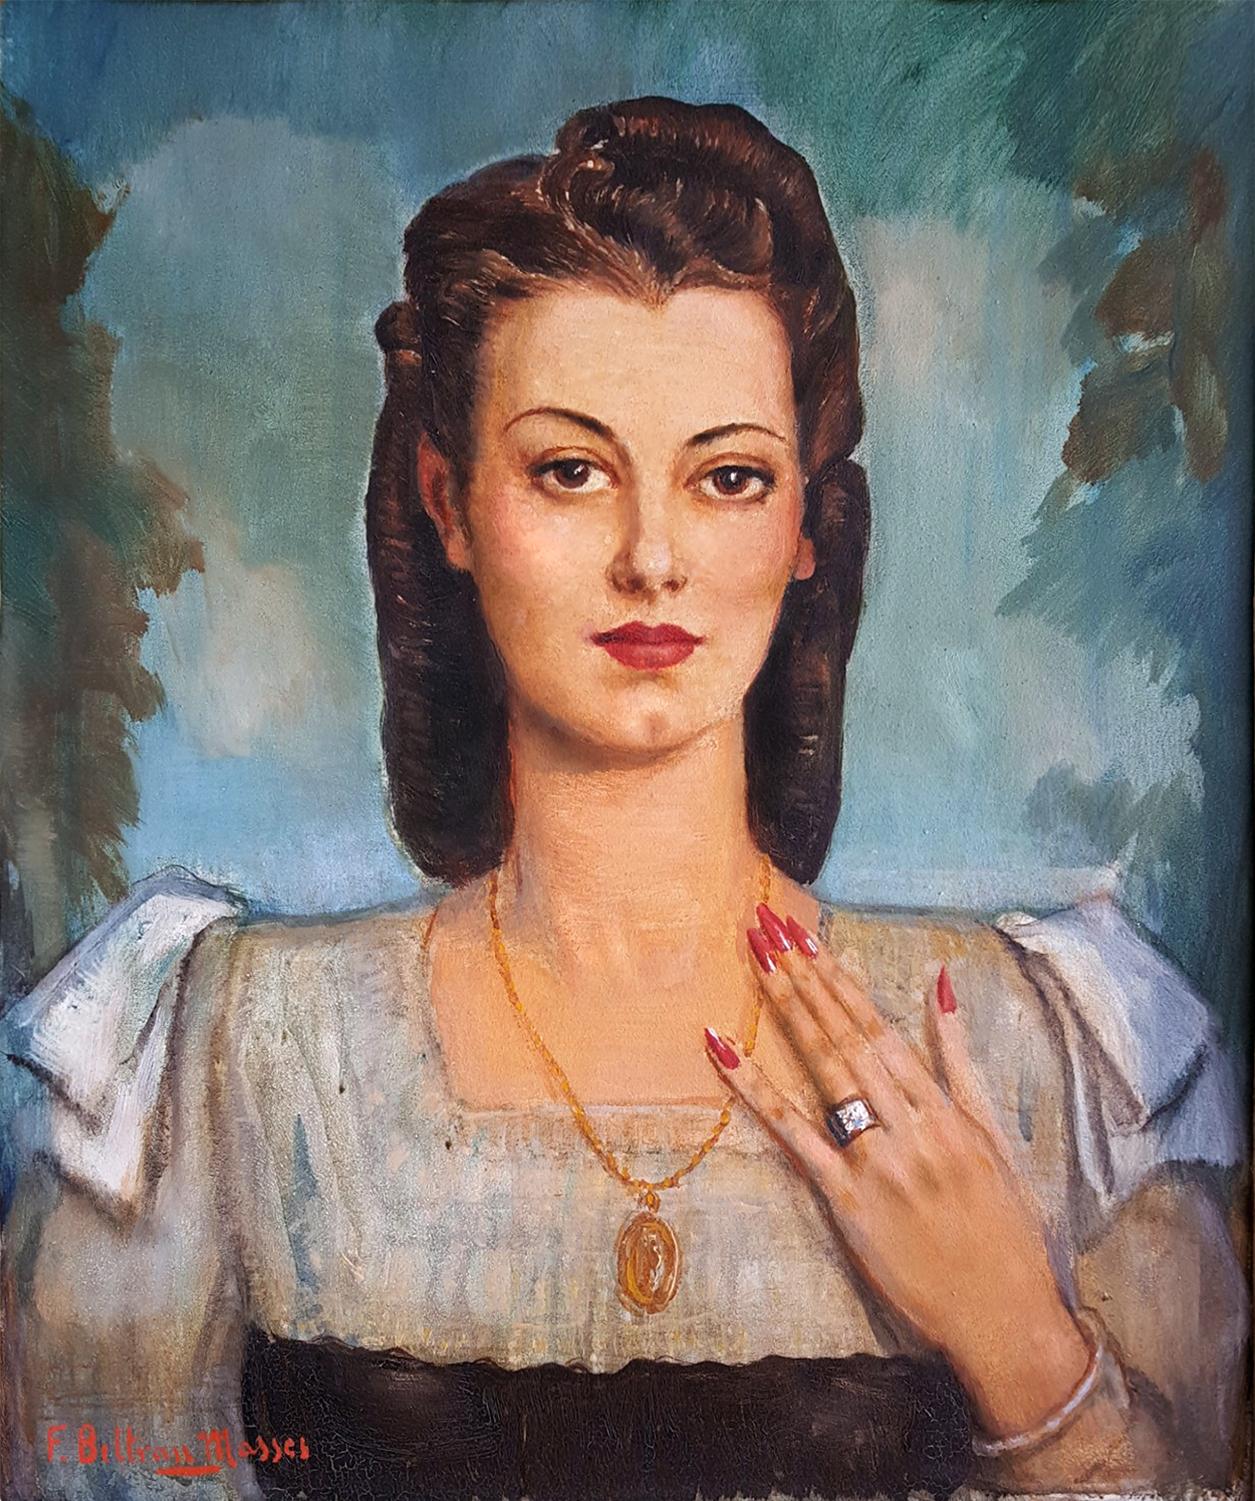 Federico Beltran Masses Portrait Painting – Lateinische Frau mit Juwelen, lateinische Frau  Art Deco